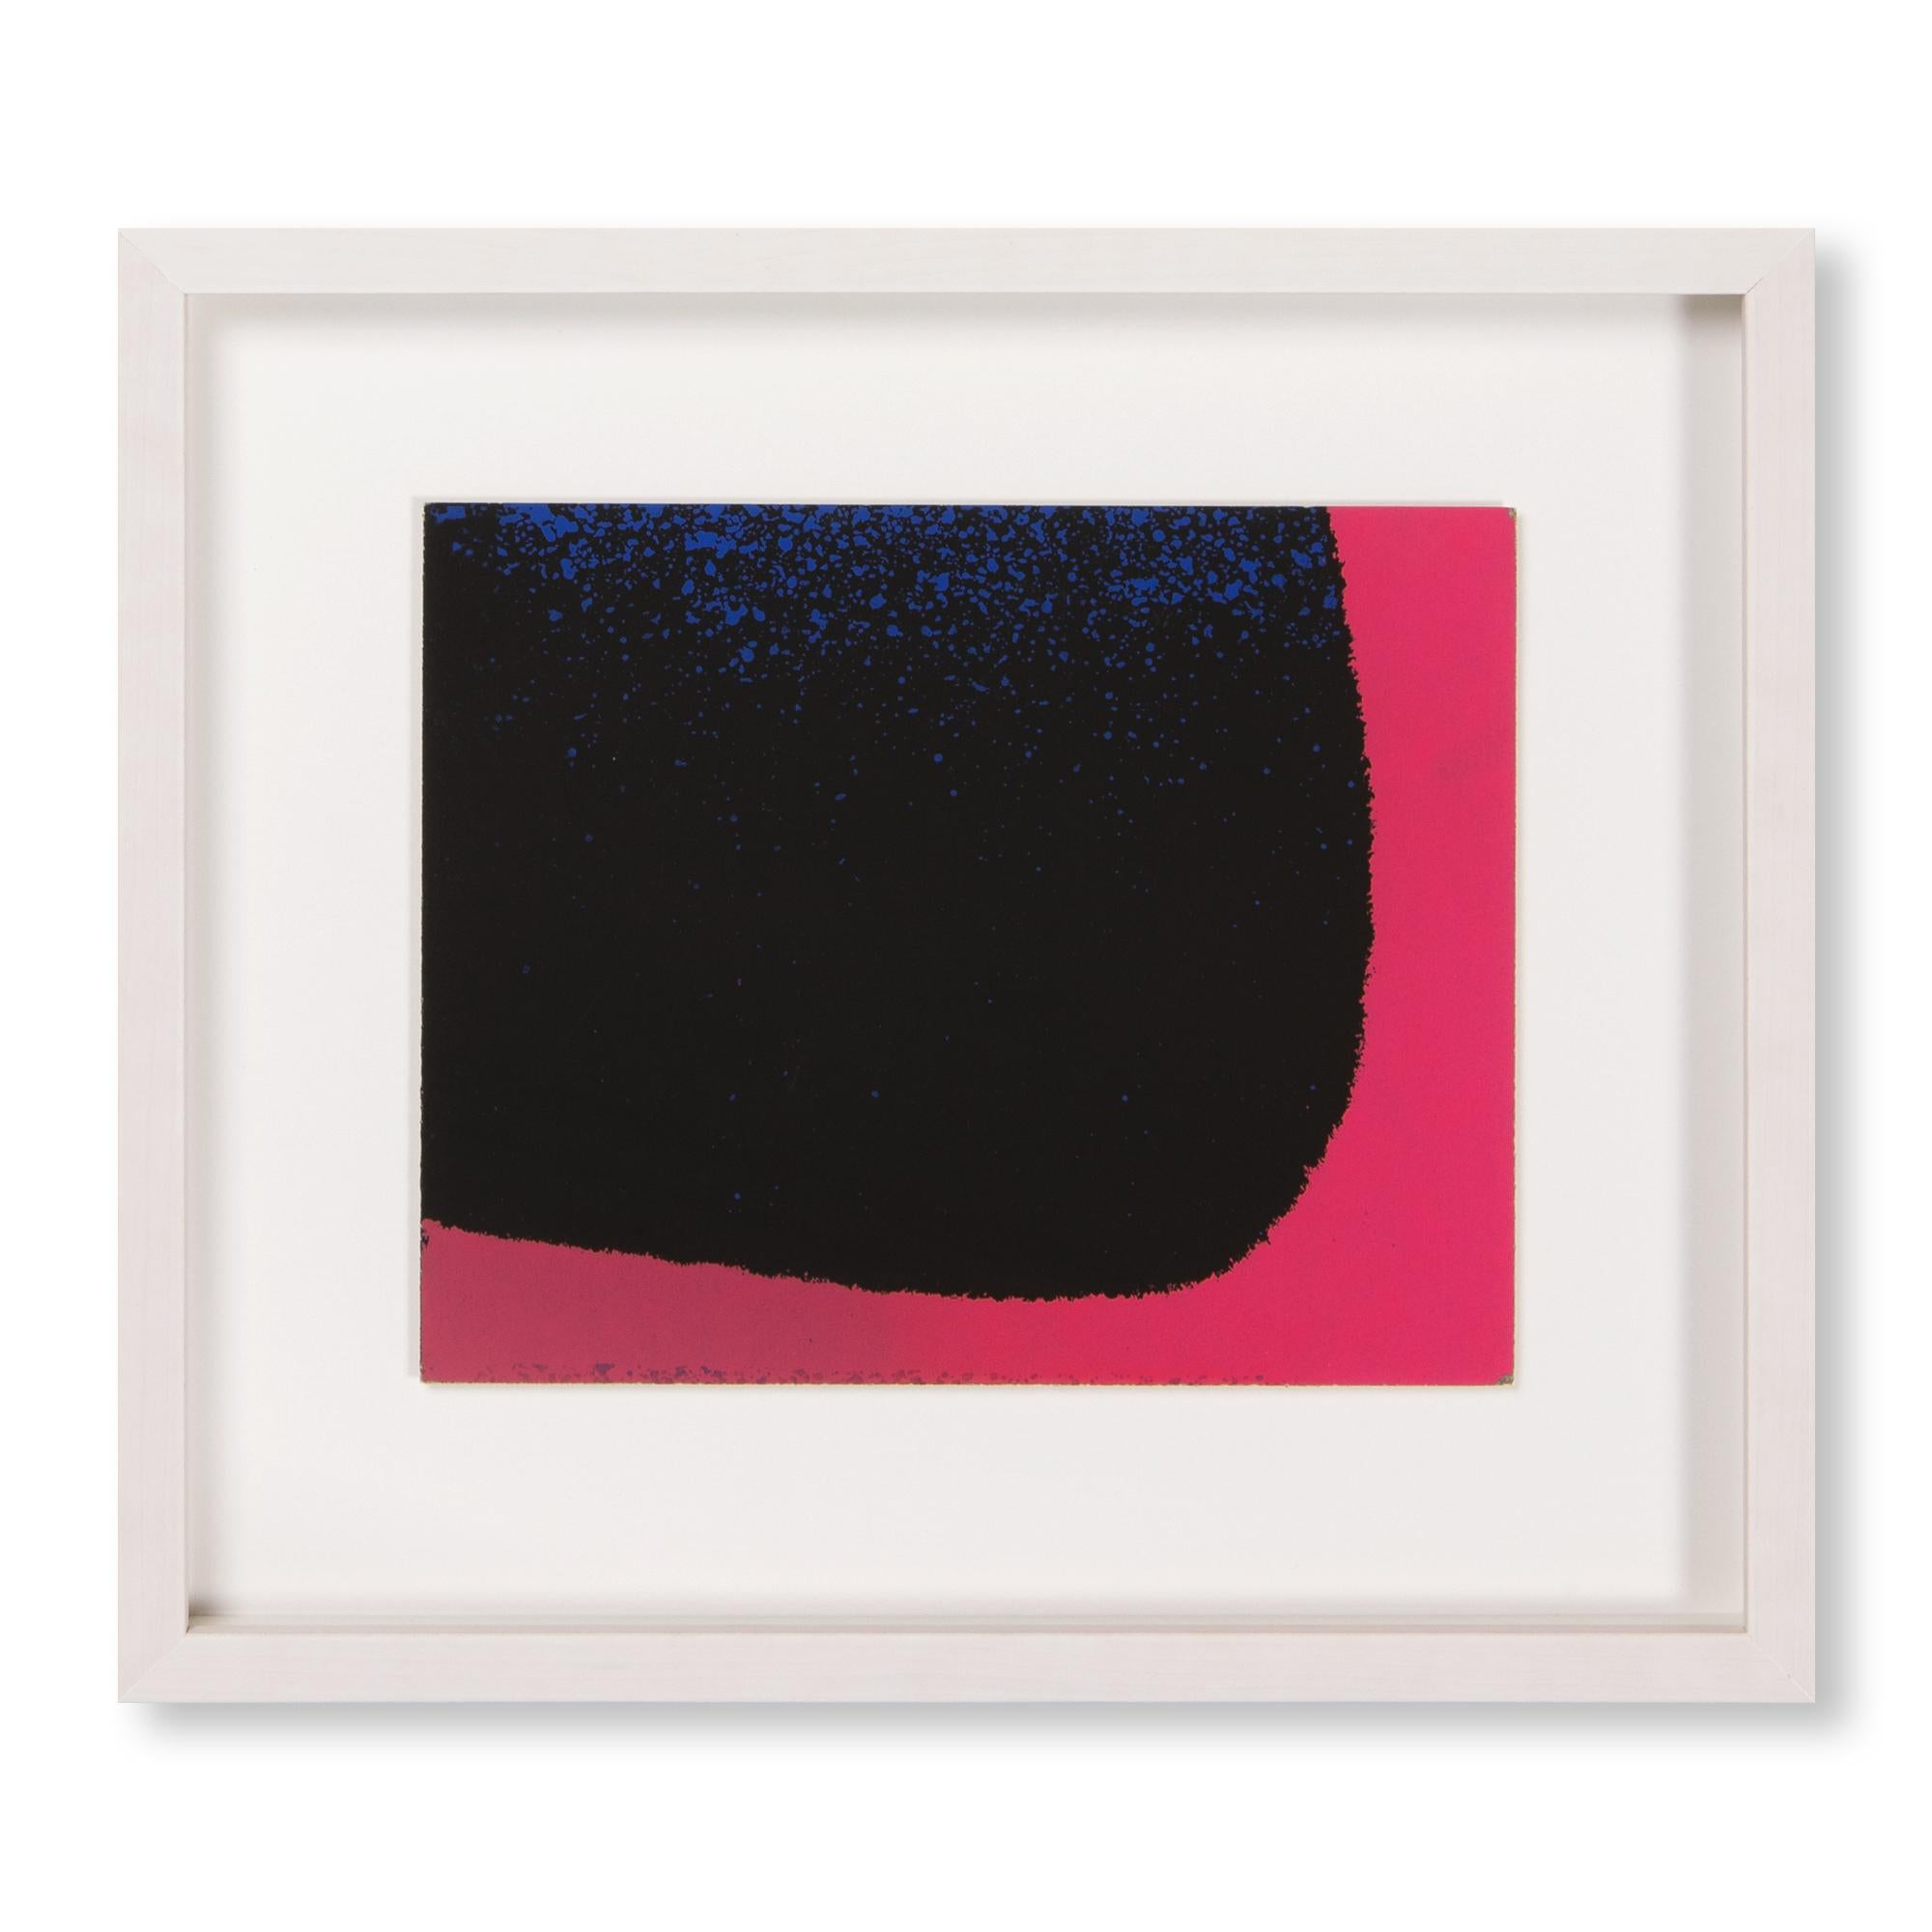 Rupprecht Geiger, Bleu-noir et rouge bleuté - Art abstrait, estampe signée